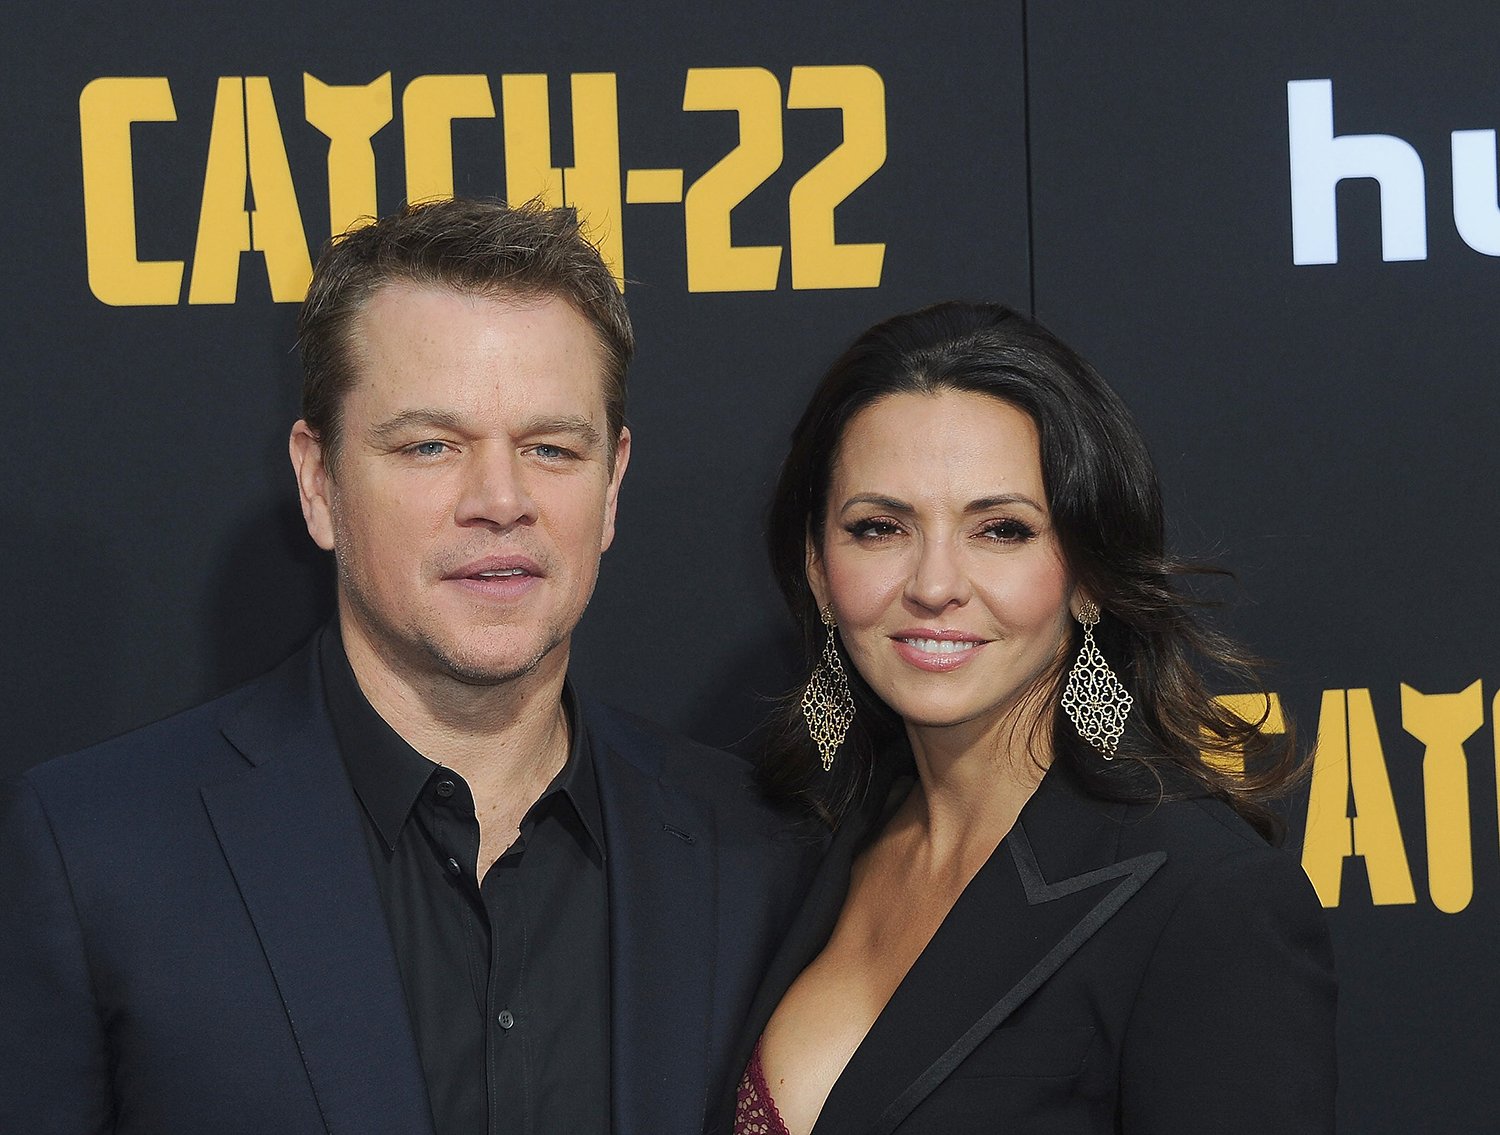 Matt Damon and Luciana Barroso at the 'Catch-22' premiere